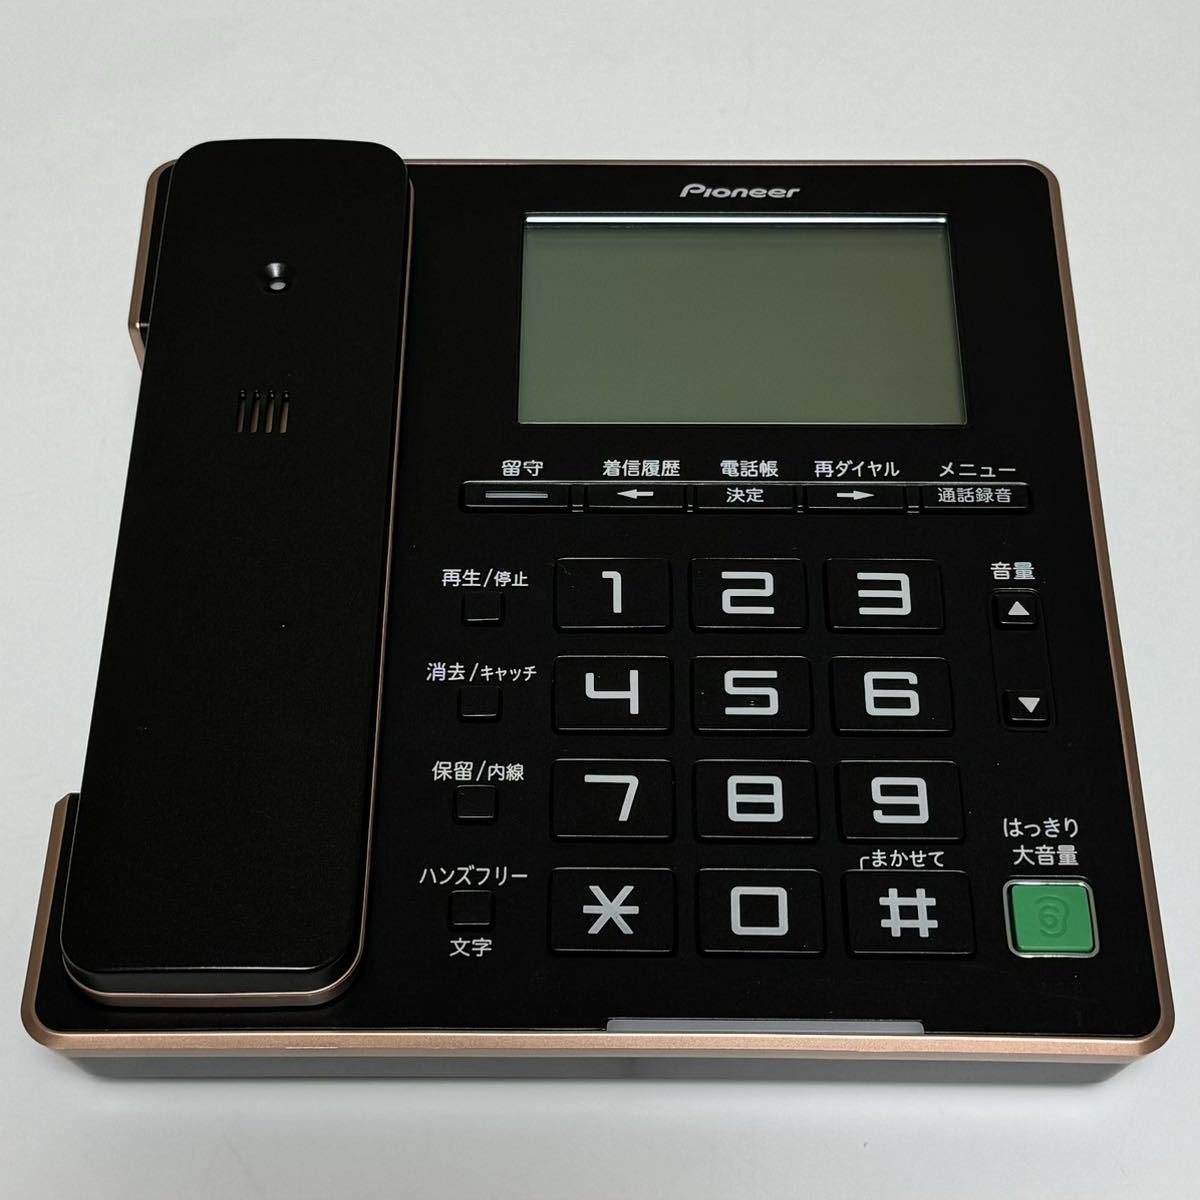 Pioneer パイオニア TF-FA75W デジタルコードレス電話機 子機1台付き ブラックの画像2